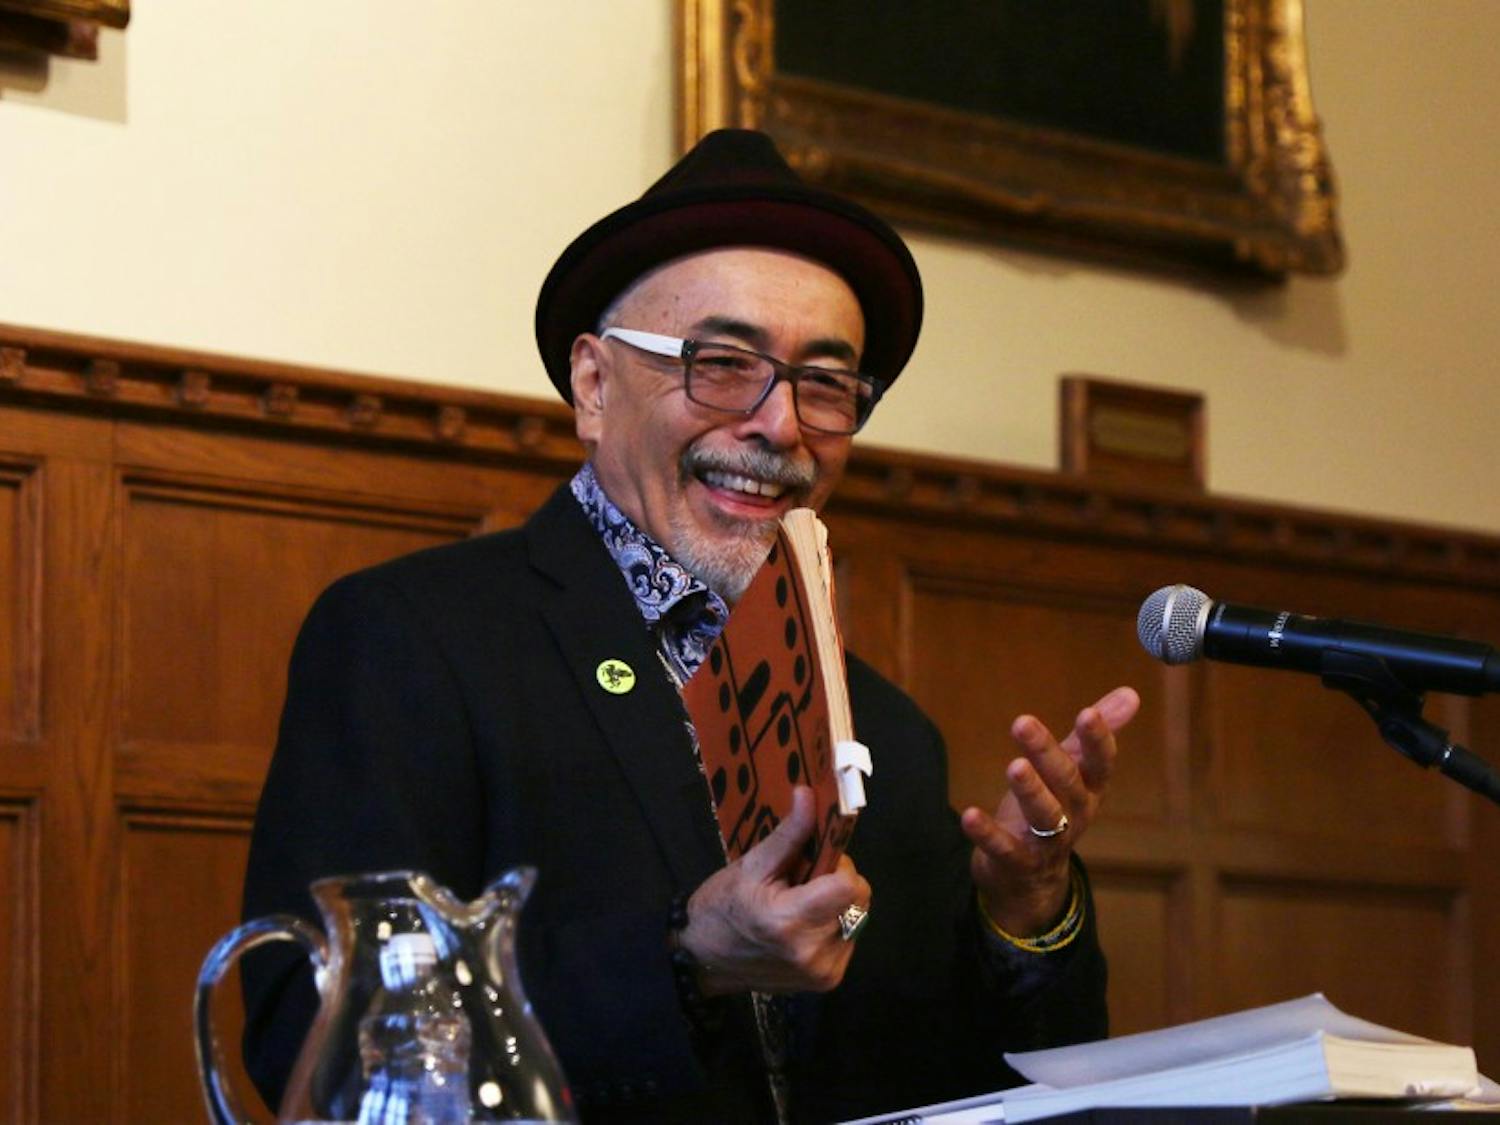 Juan Felipe Herrera has served at U.S. Poet Laureate since 2015.